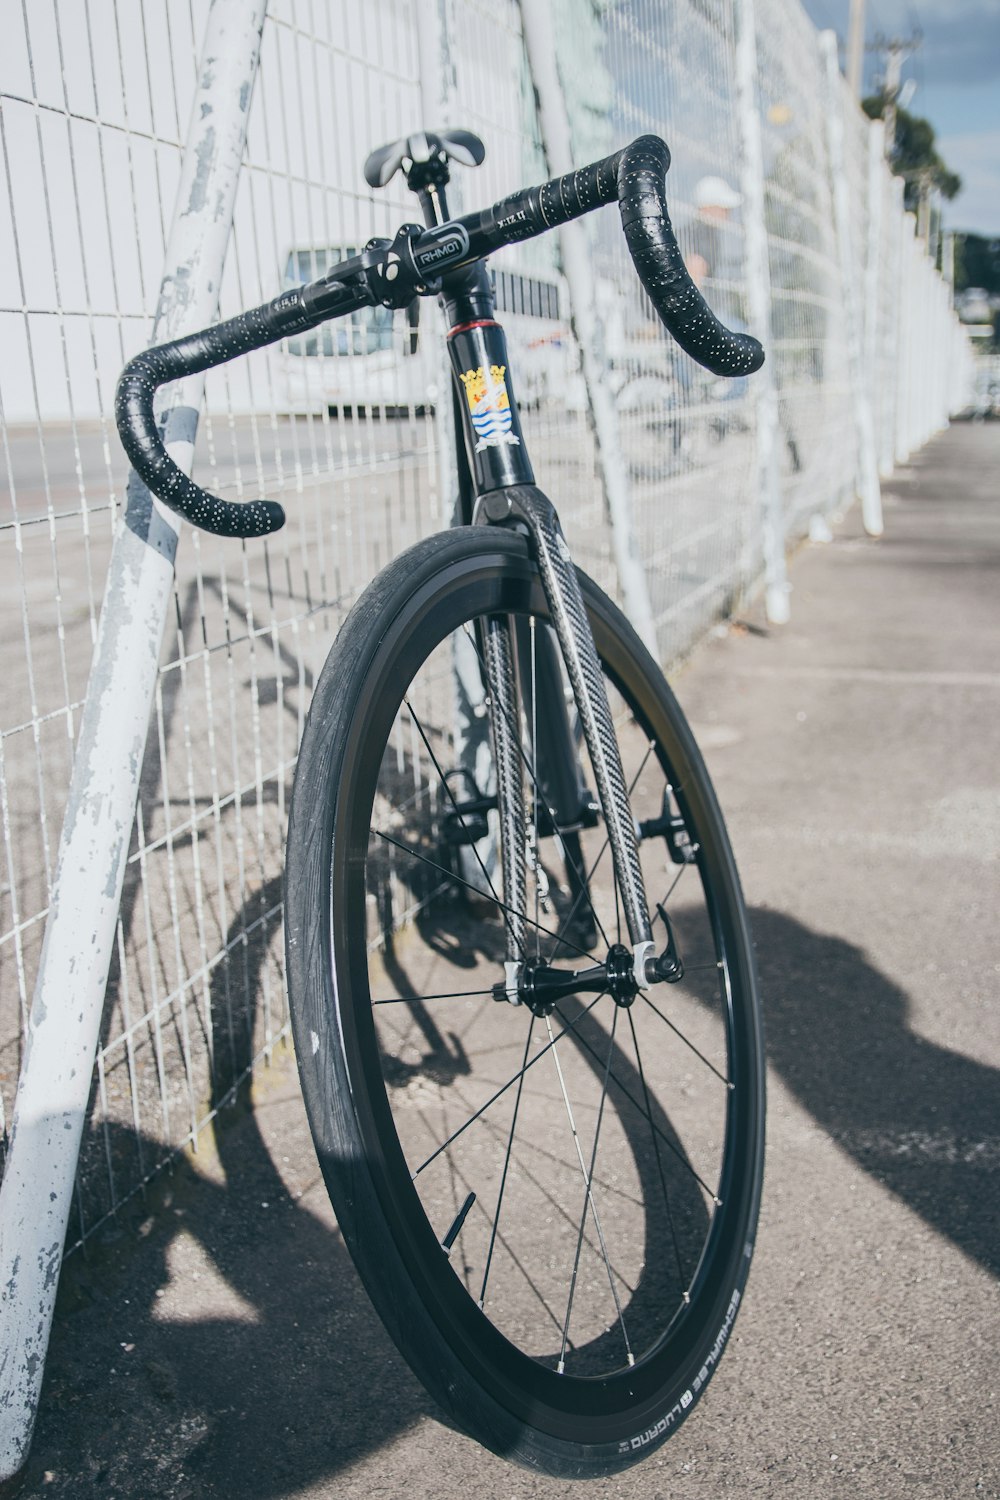 bici da strada in bianco e nero parcheggiata accanto alla recinzione metallica